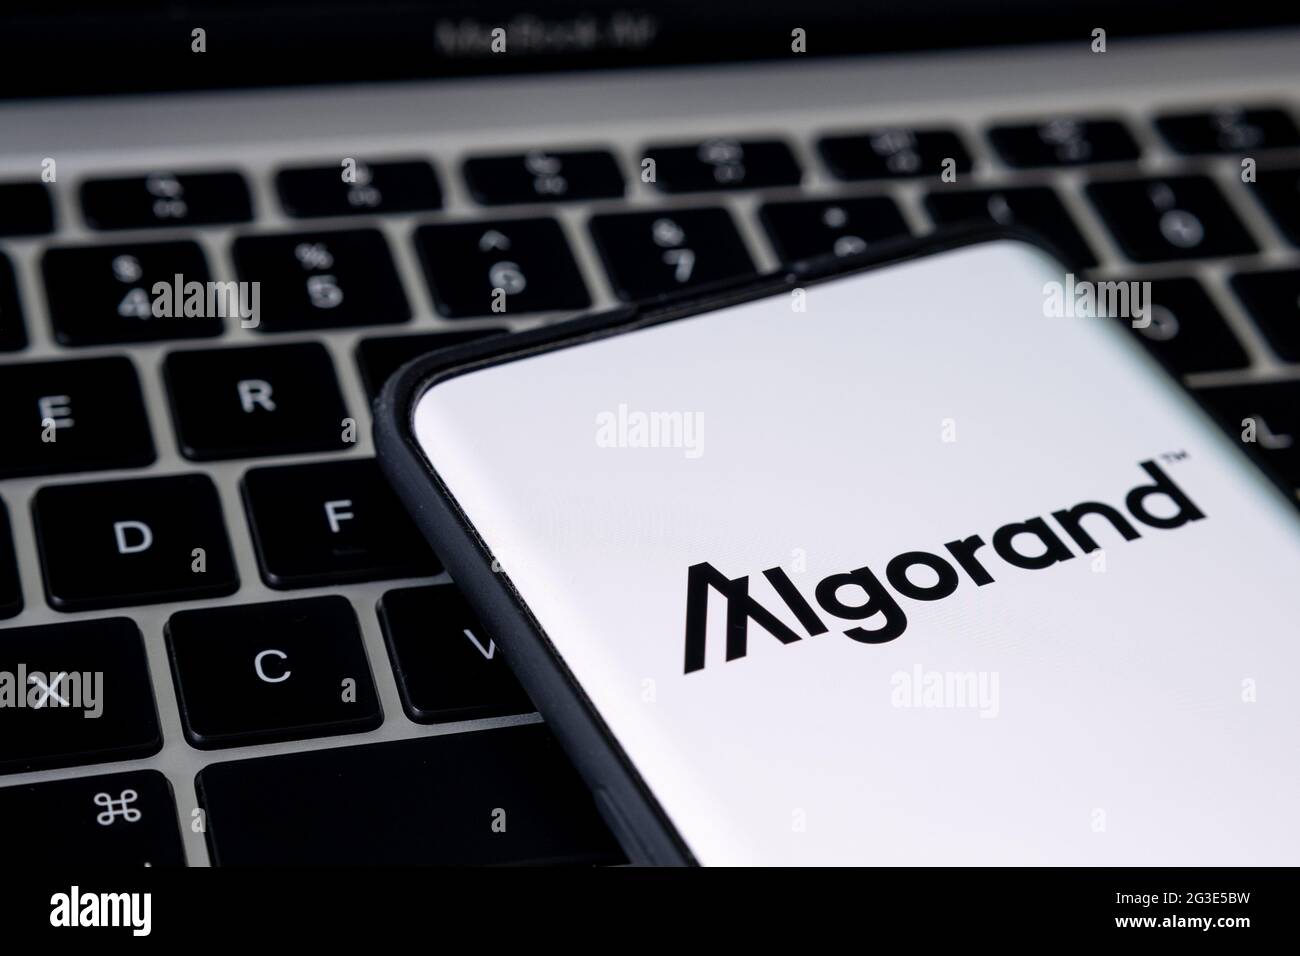 Logo de la plate-forme de crypto-monnaie d'Algorand vu sur le smartphone placé sur le clavier de l'ordinateur portable. Concept. Stafford, Royaume-Uni, 16 juin 2021. Banque D'Images